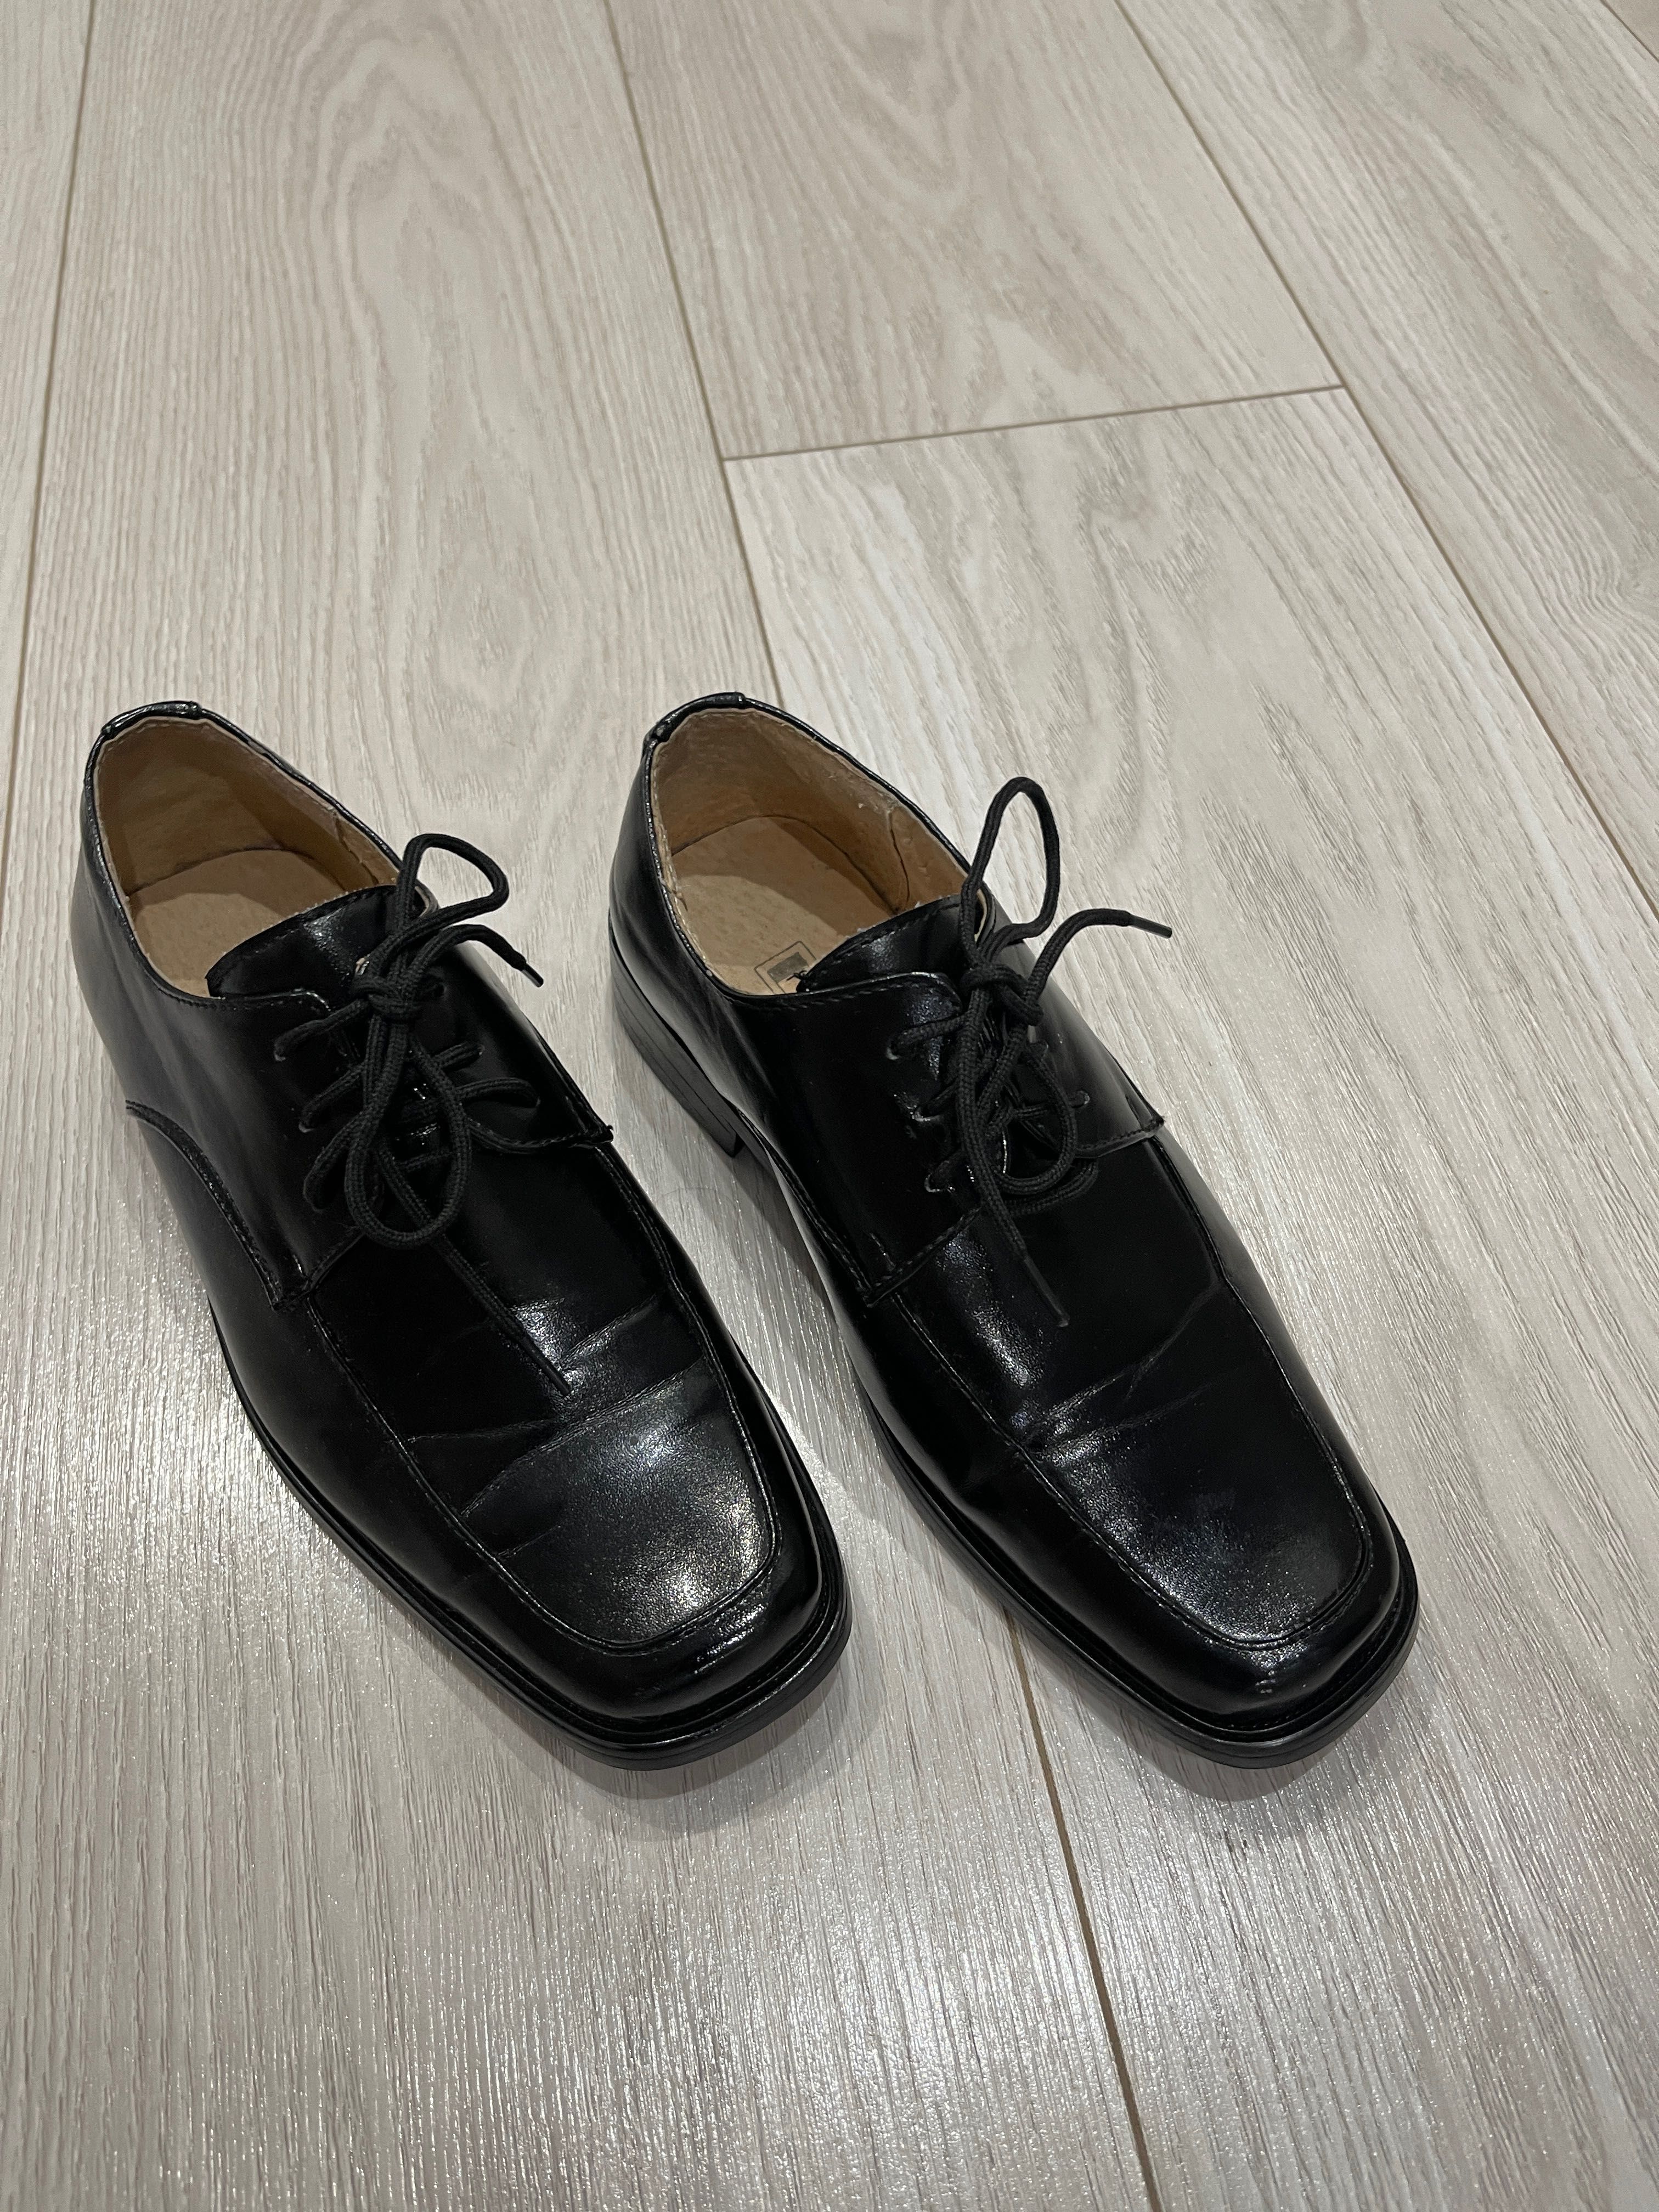 Czarne komunijne garniturowe skórzane  buty chlopiece  31